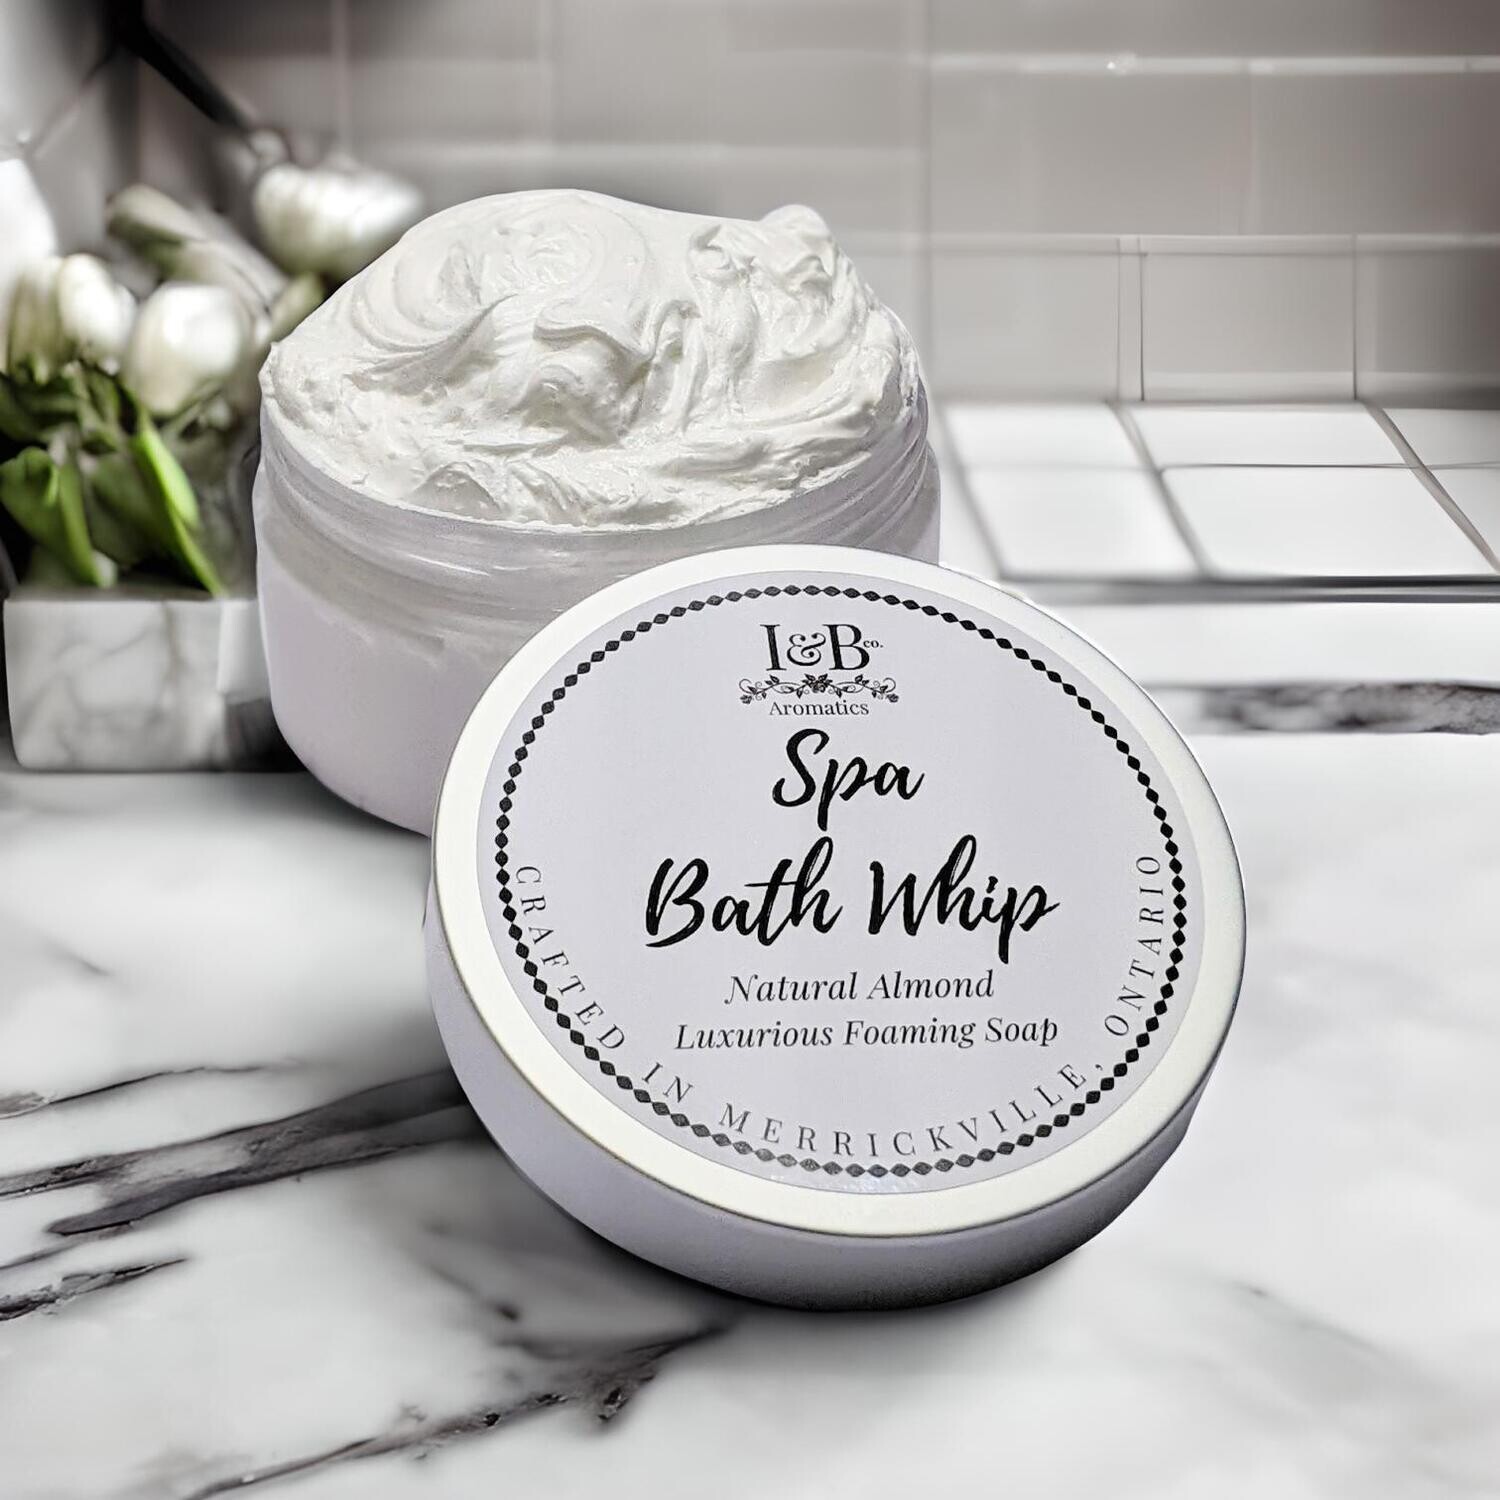 Spa Bath Whip - Natural Almond